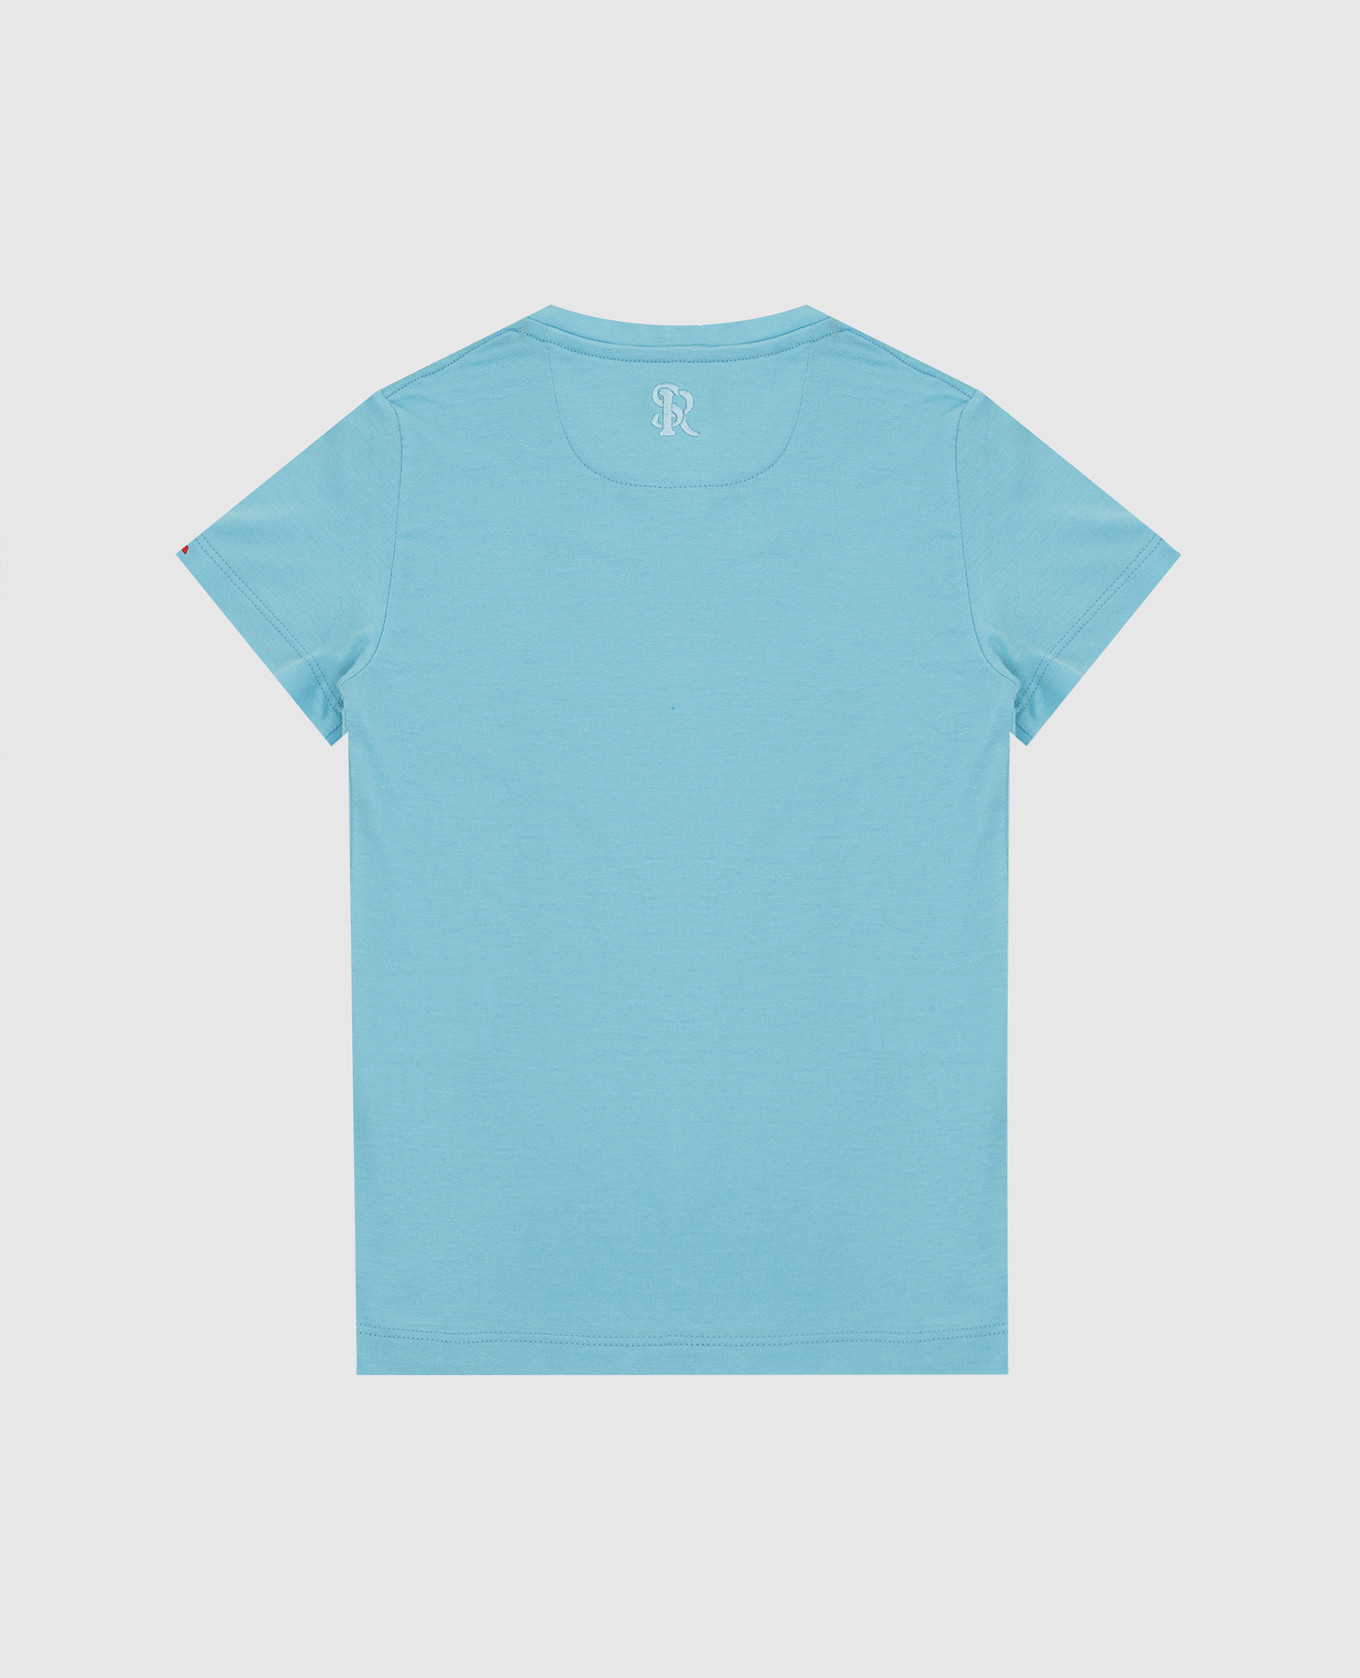 Stefano Ricci Детская голубая футболка с эмблемой YNH9200200803 изображение 2